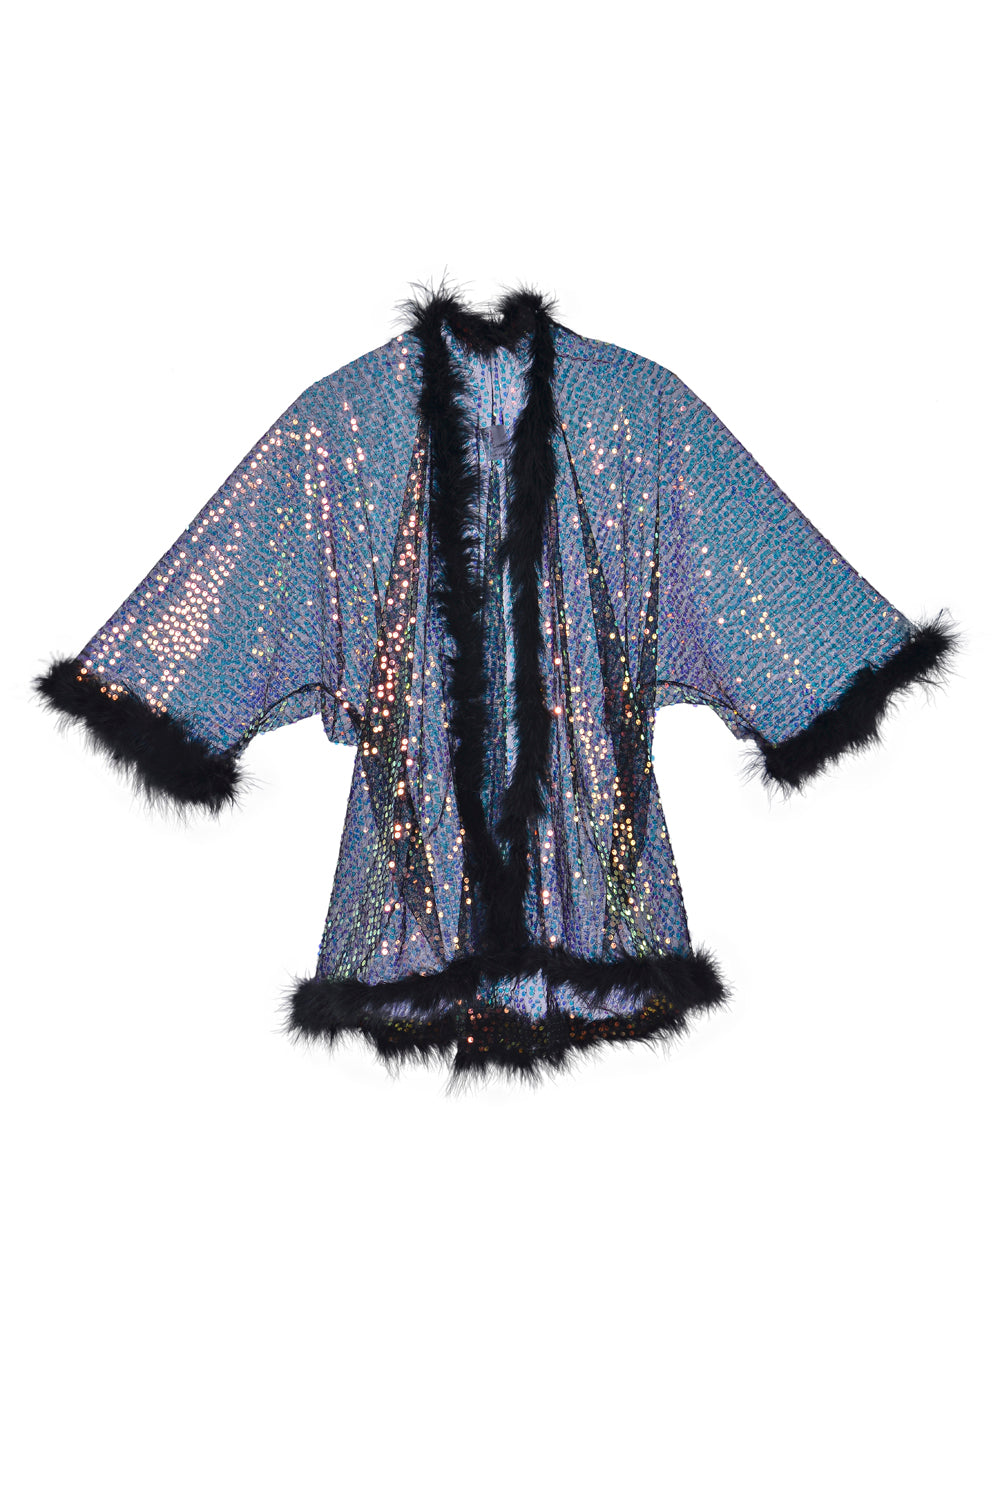 Fuzzy Sequin Kimono- Black Prism